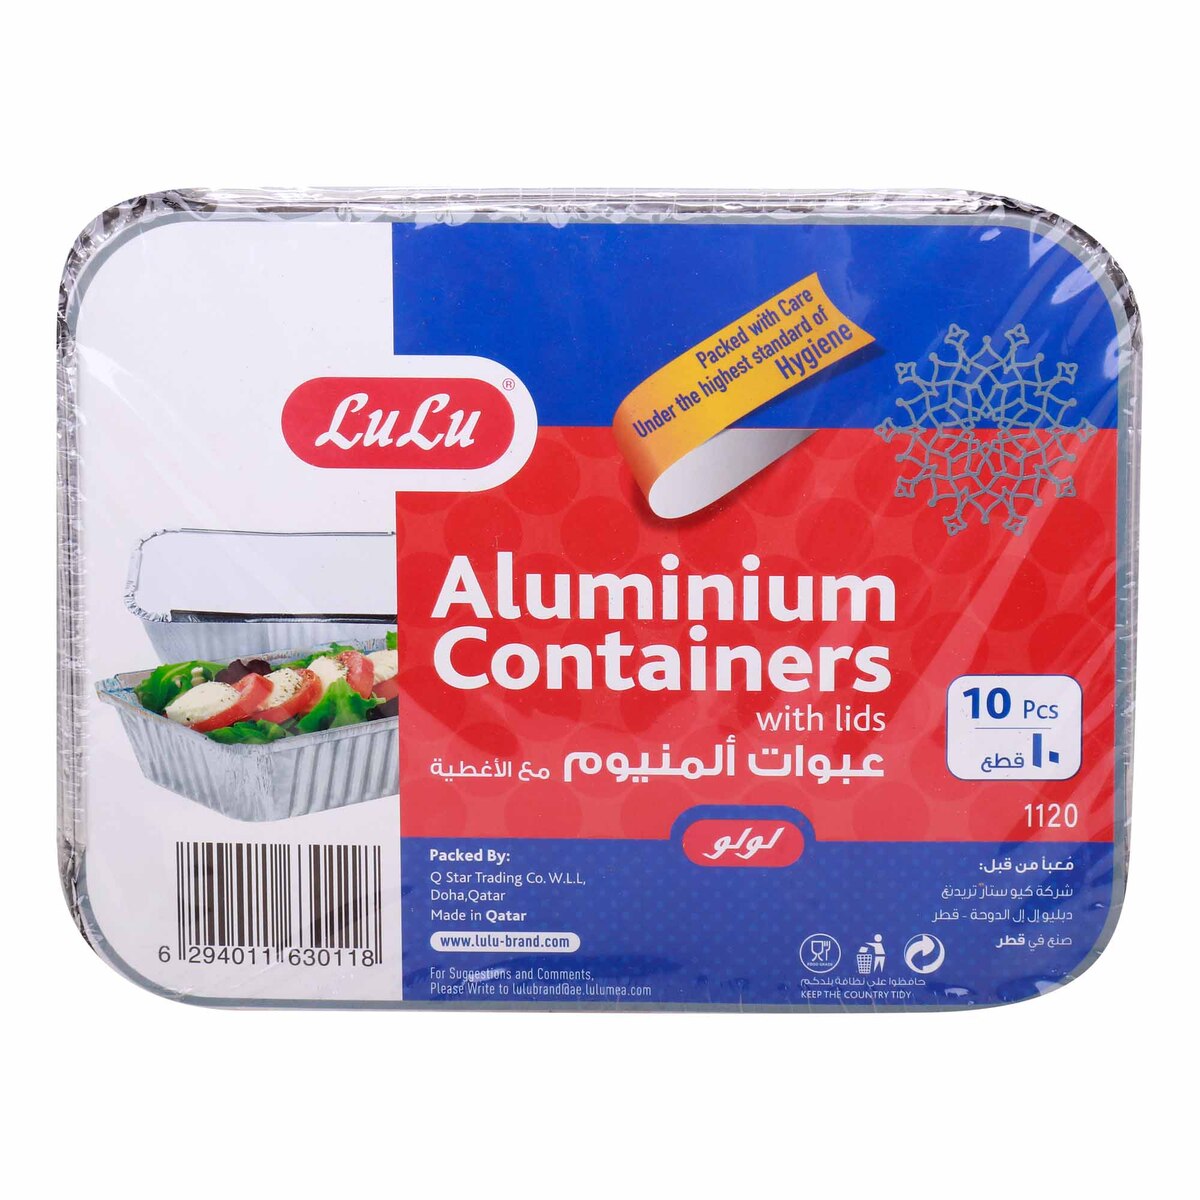 Premium Aluminium Containers with Lids 1120 10 pcs